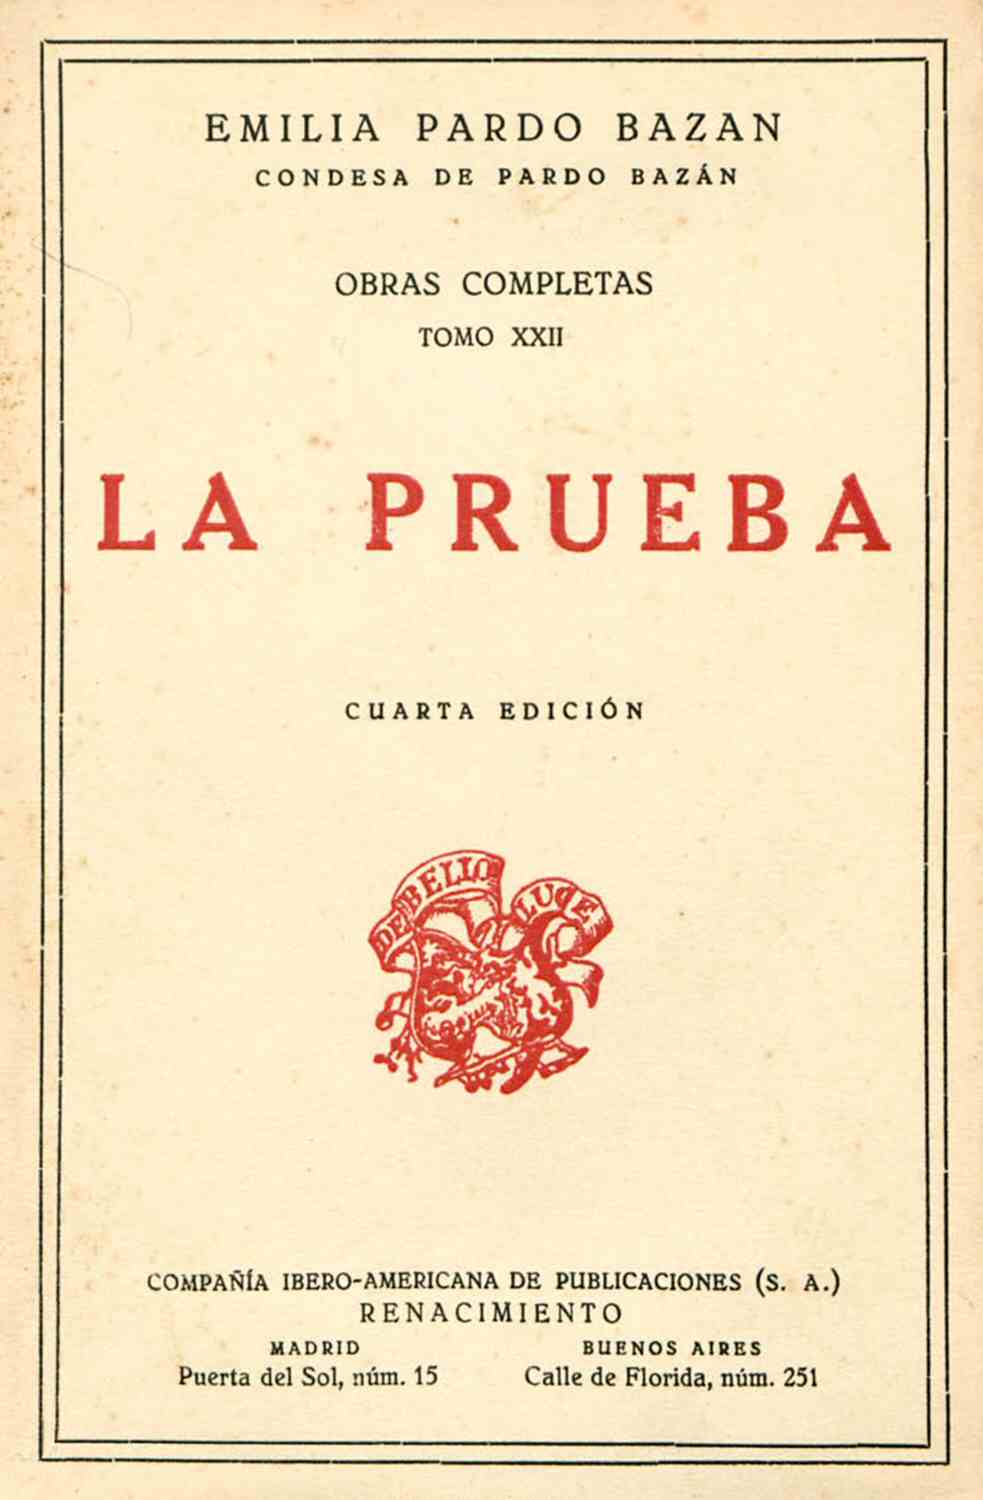 La prueba, by Emilia Pardo Bazán—A Project Gutenberg eBook